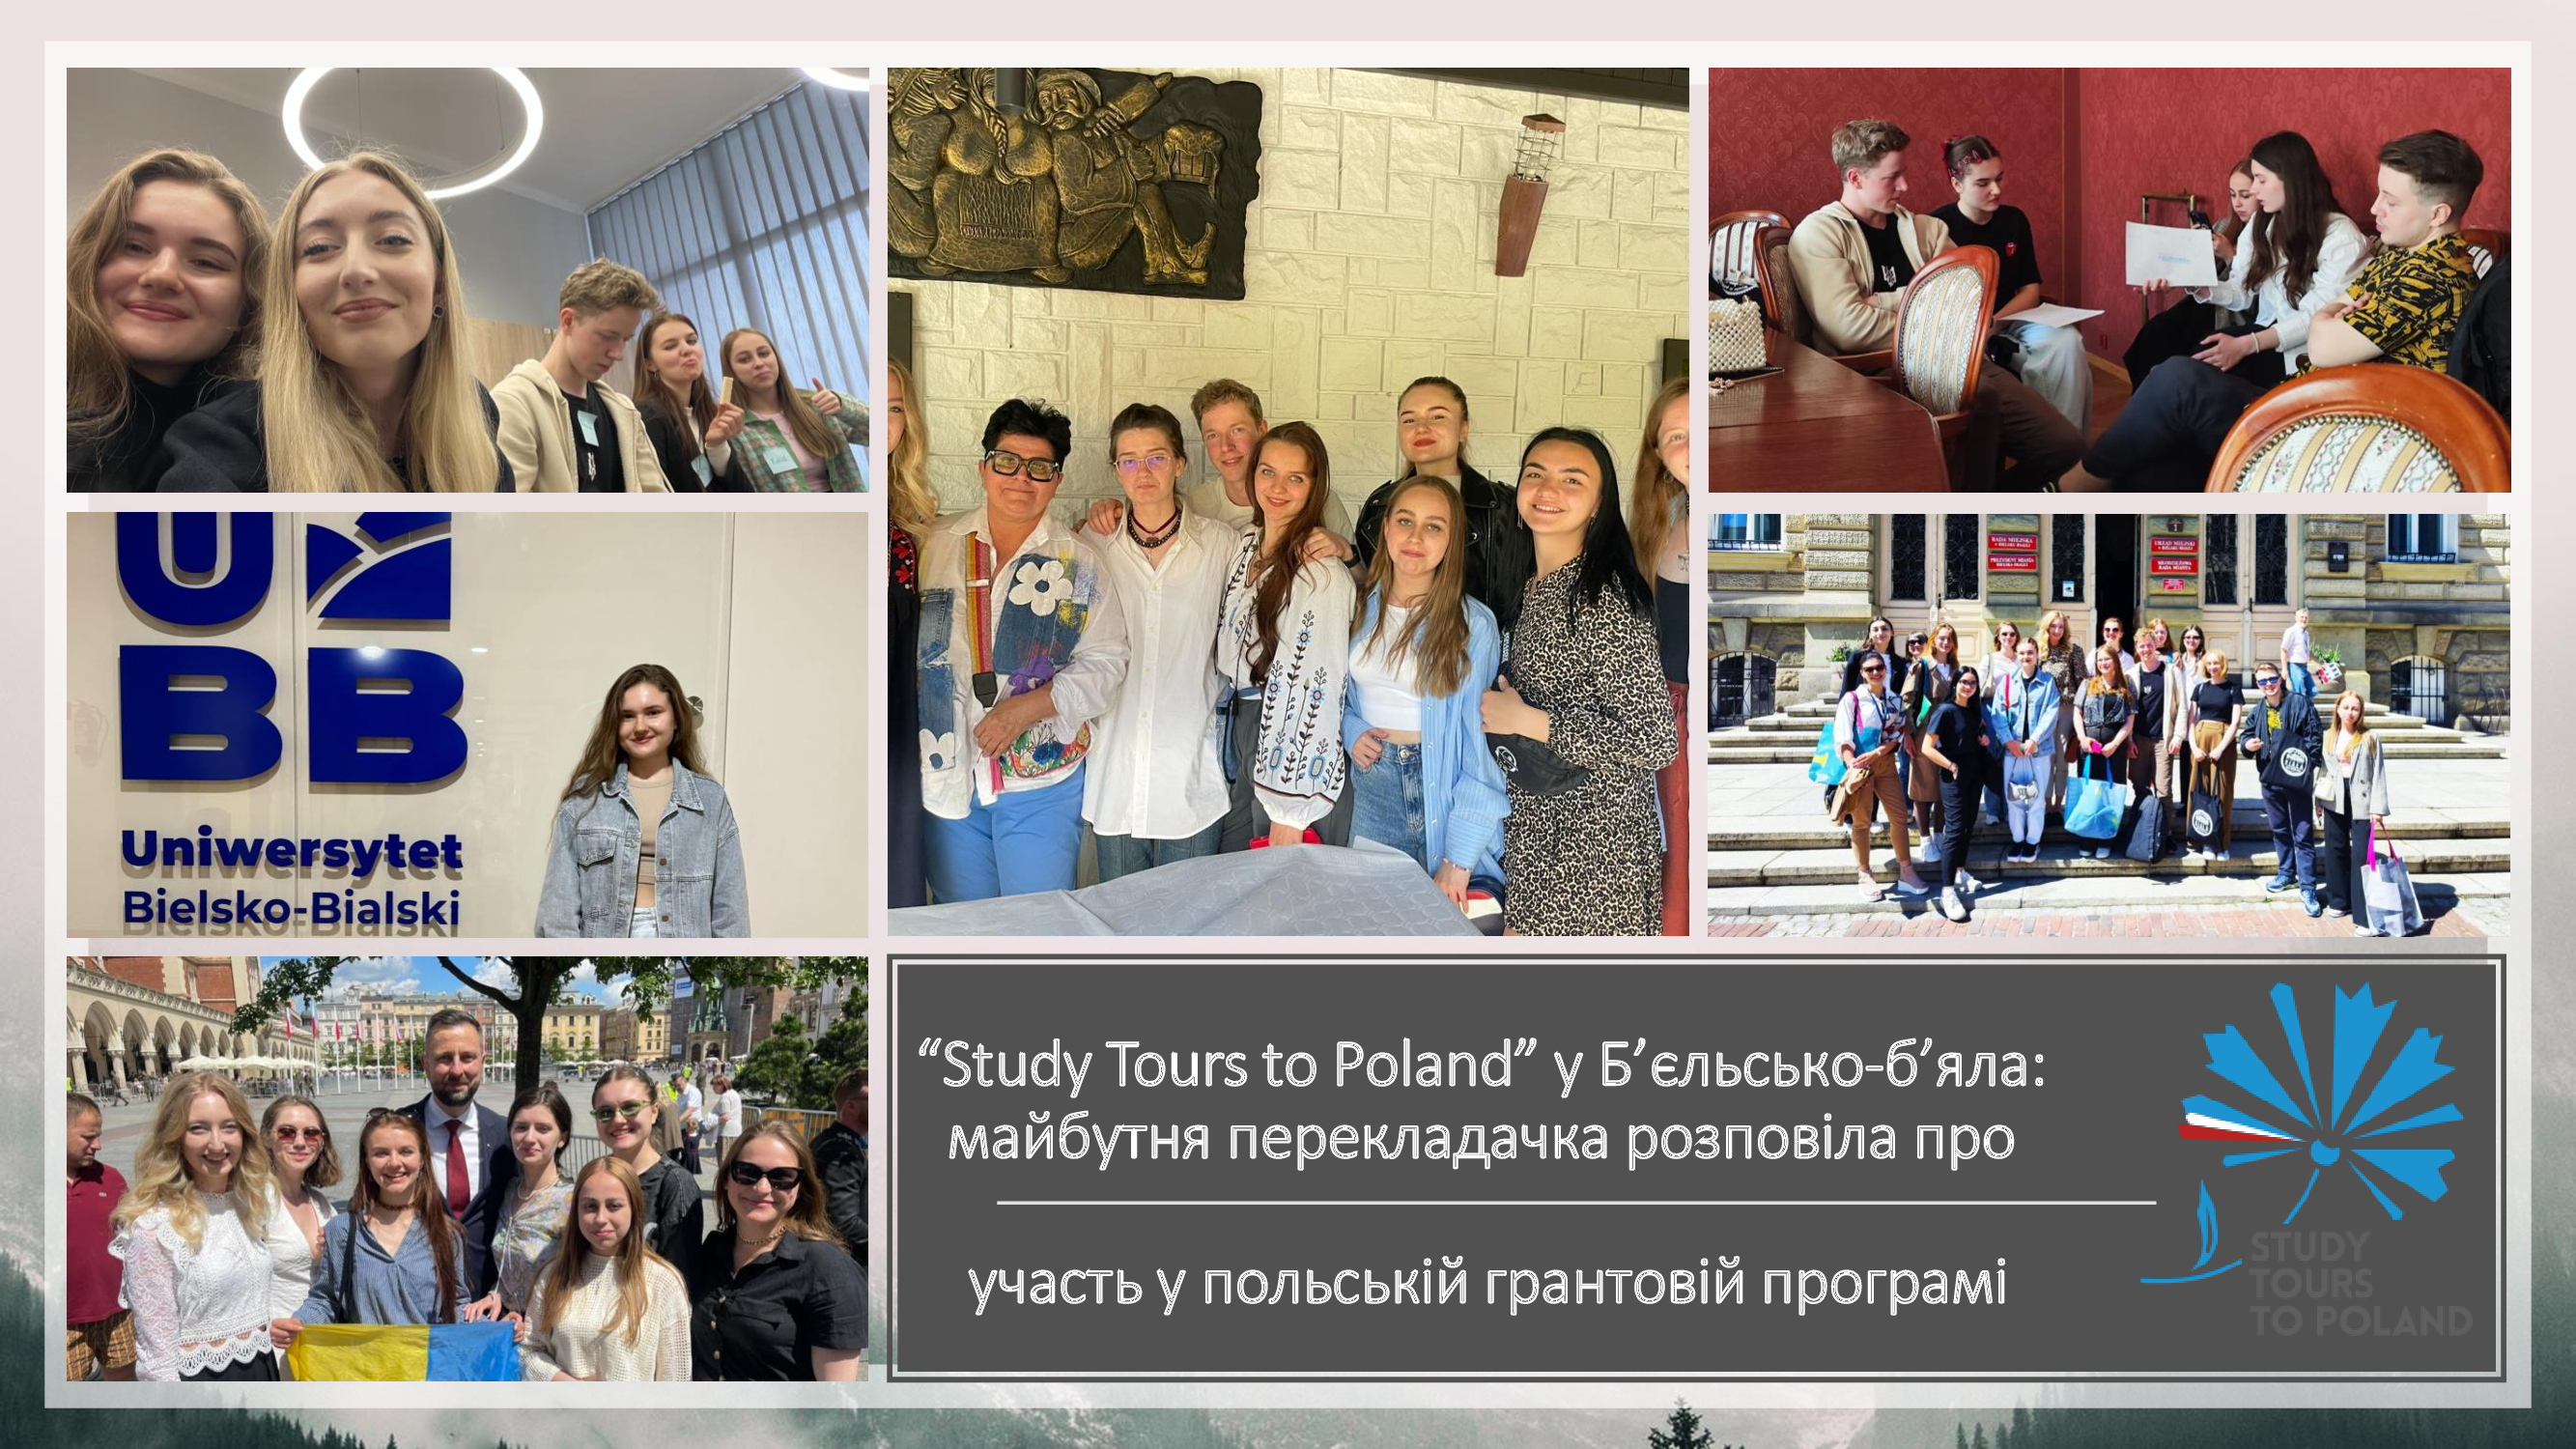 «Study Tours to Poland» у Б’єльсько-б’яла: майбутня перекладачка розповіла про участь у польській грантовій програмі